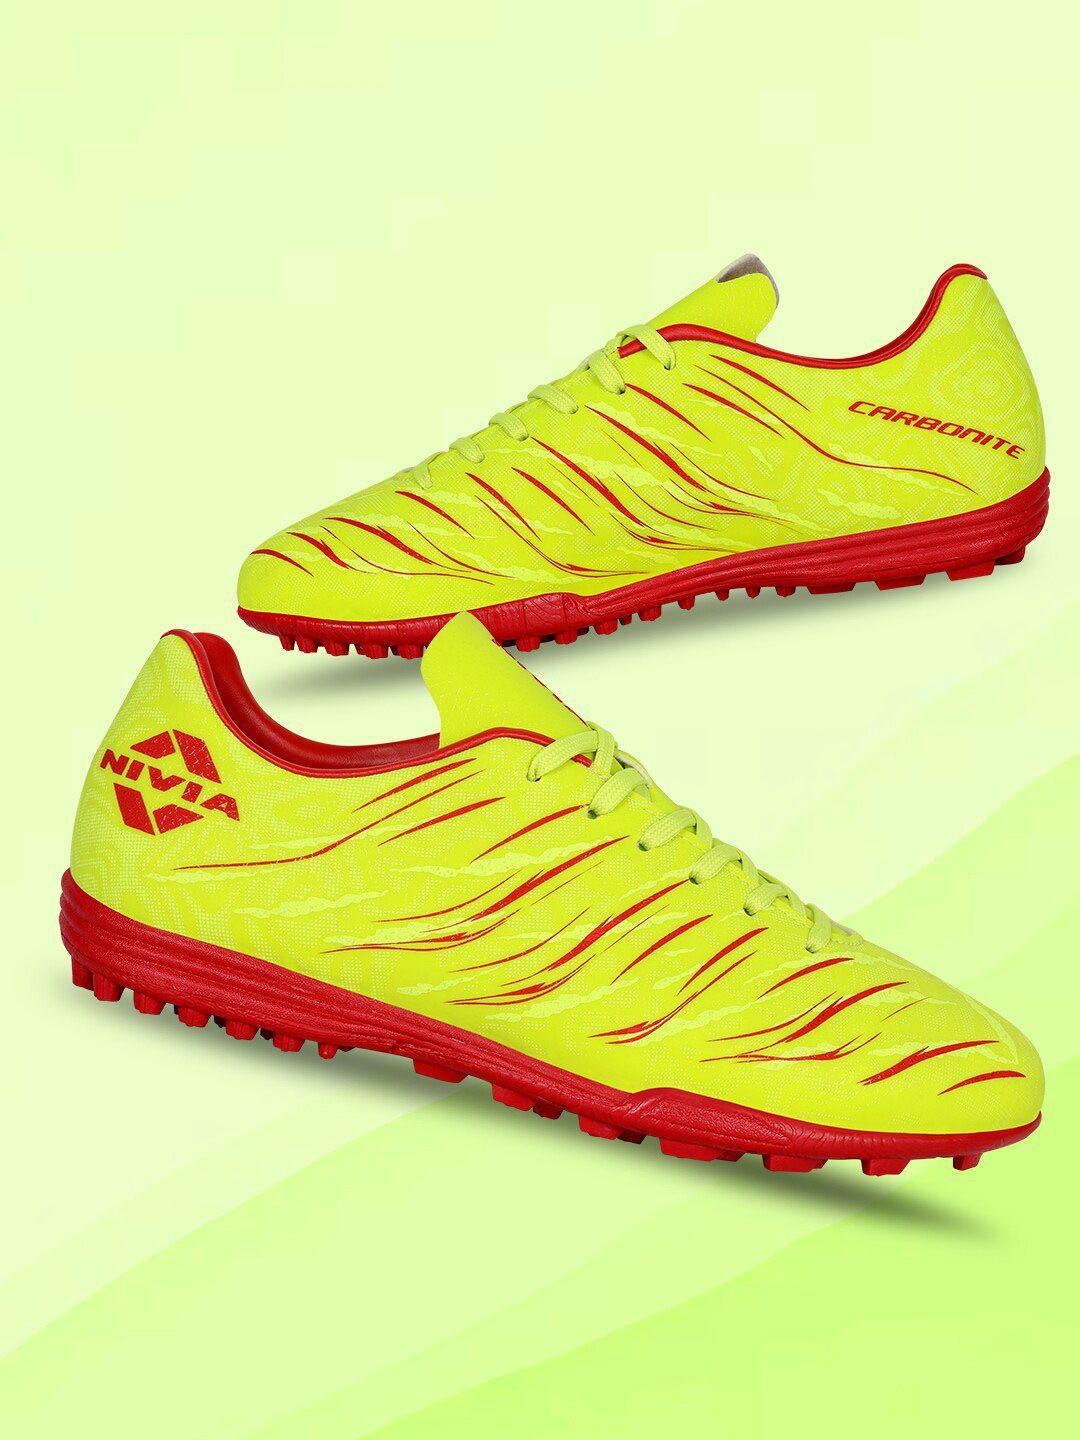 nivia men carbonite 6.0 turf football shoes